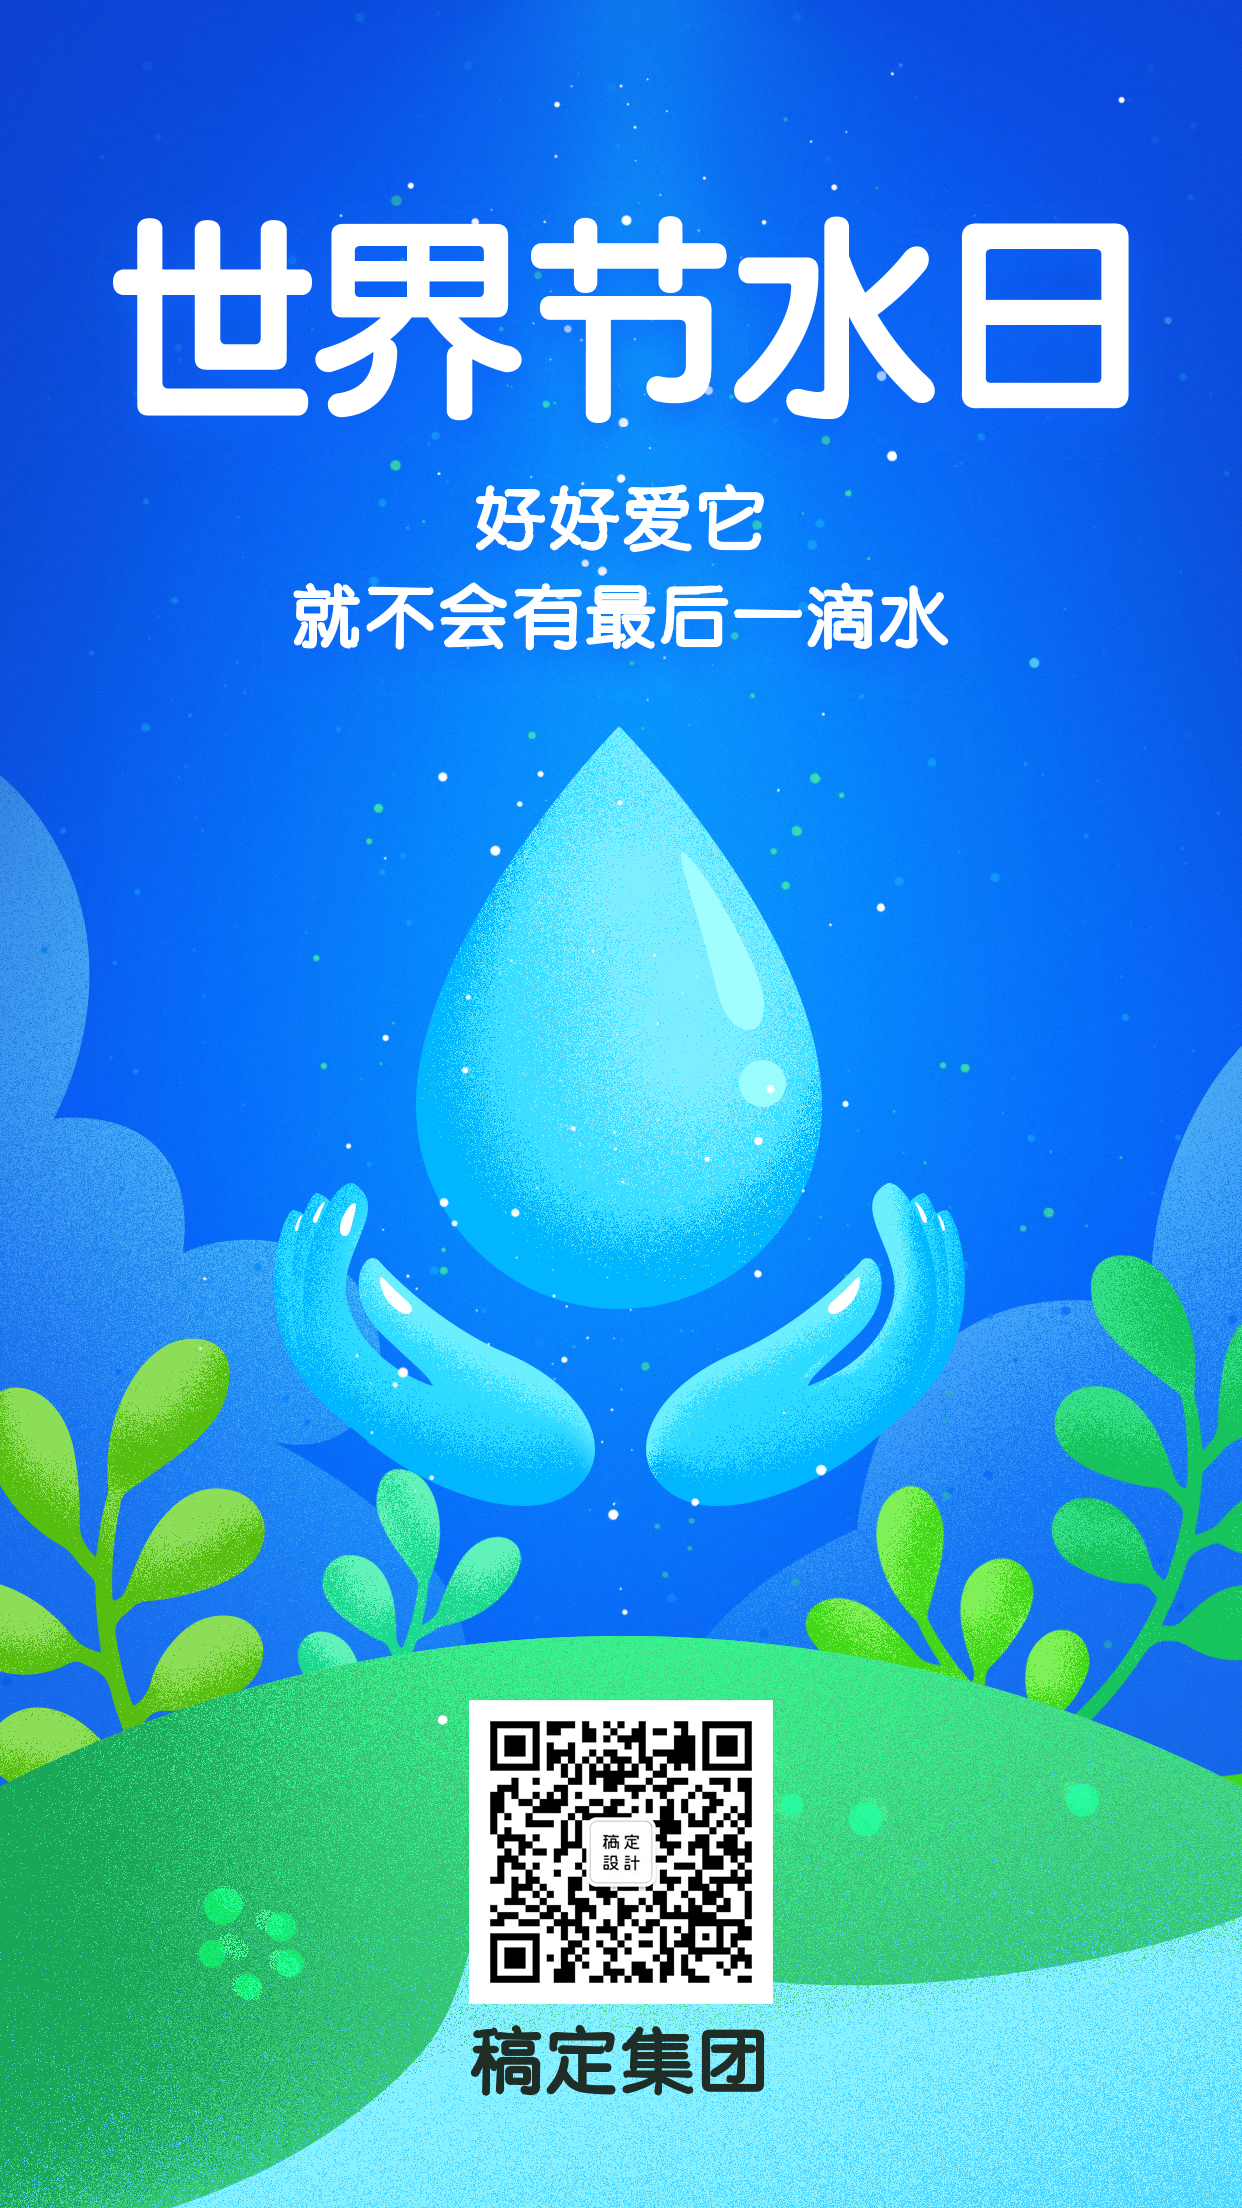 世界节水日公益宣传扁平手机海报水滴